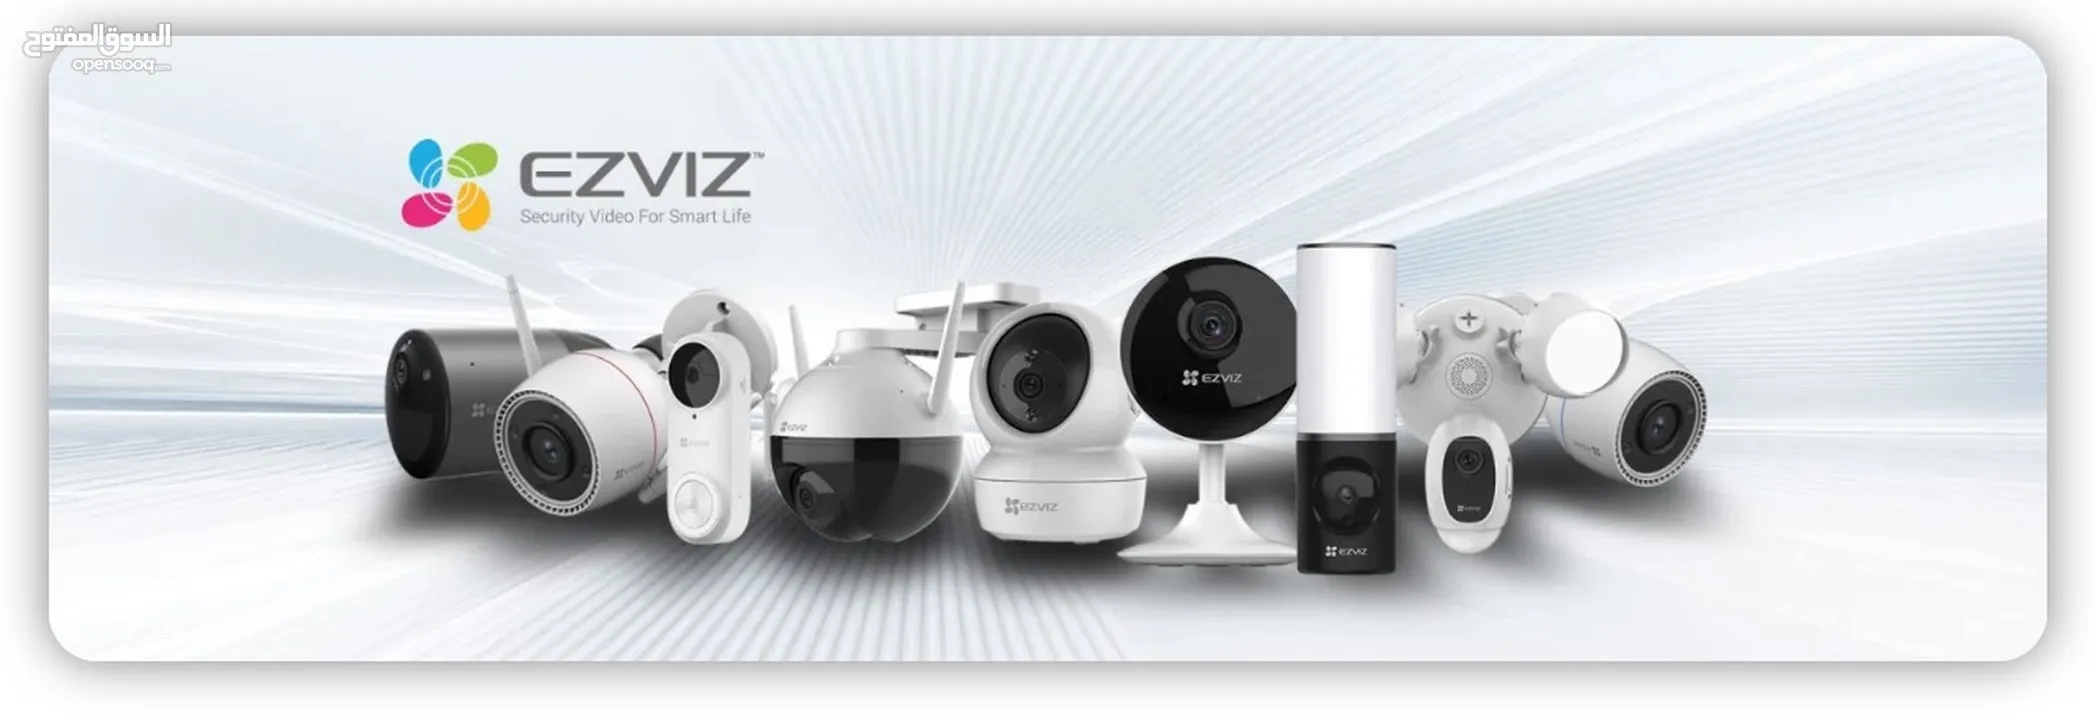 بيع وتركيب كاميرات مراقبة و اجهزة حماية ضد السرقة